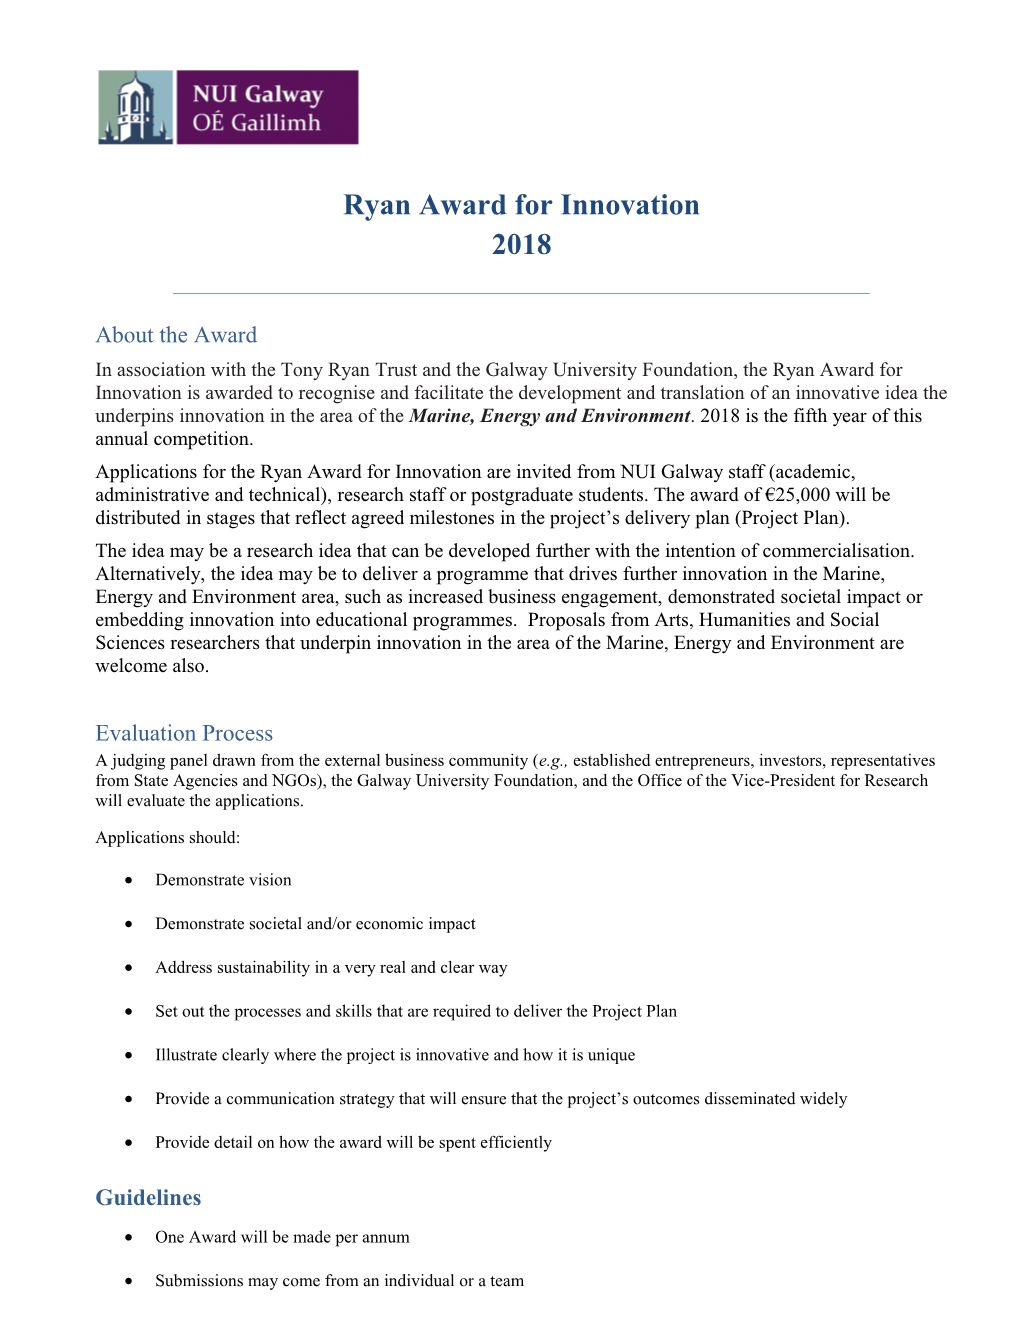 Ryan Award for Innovation 2018